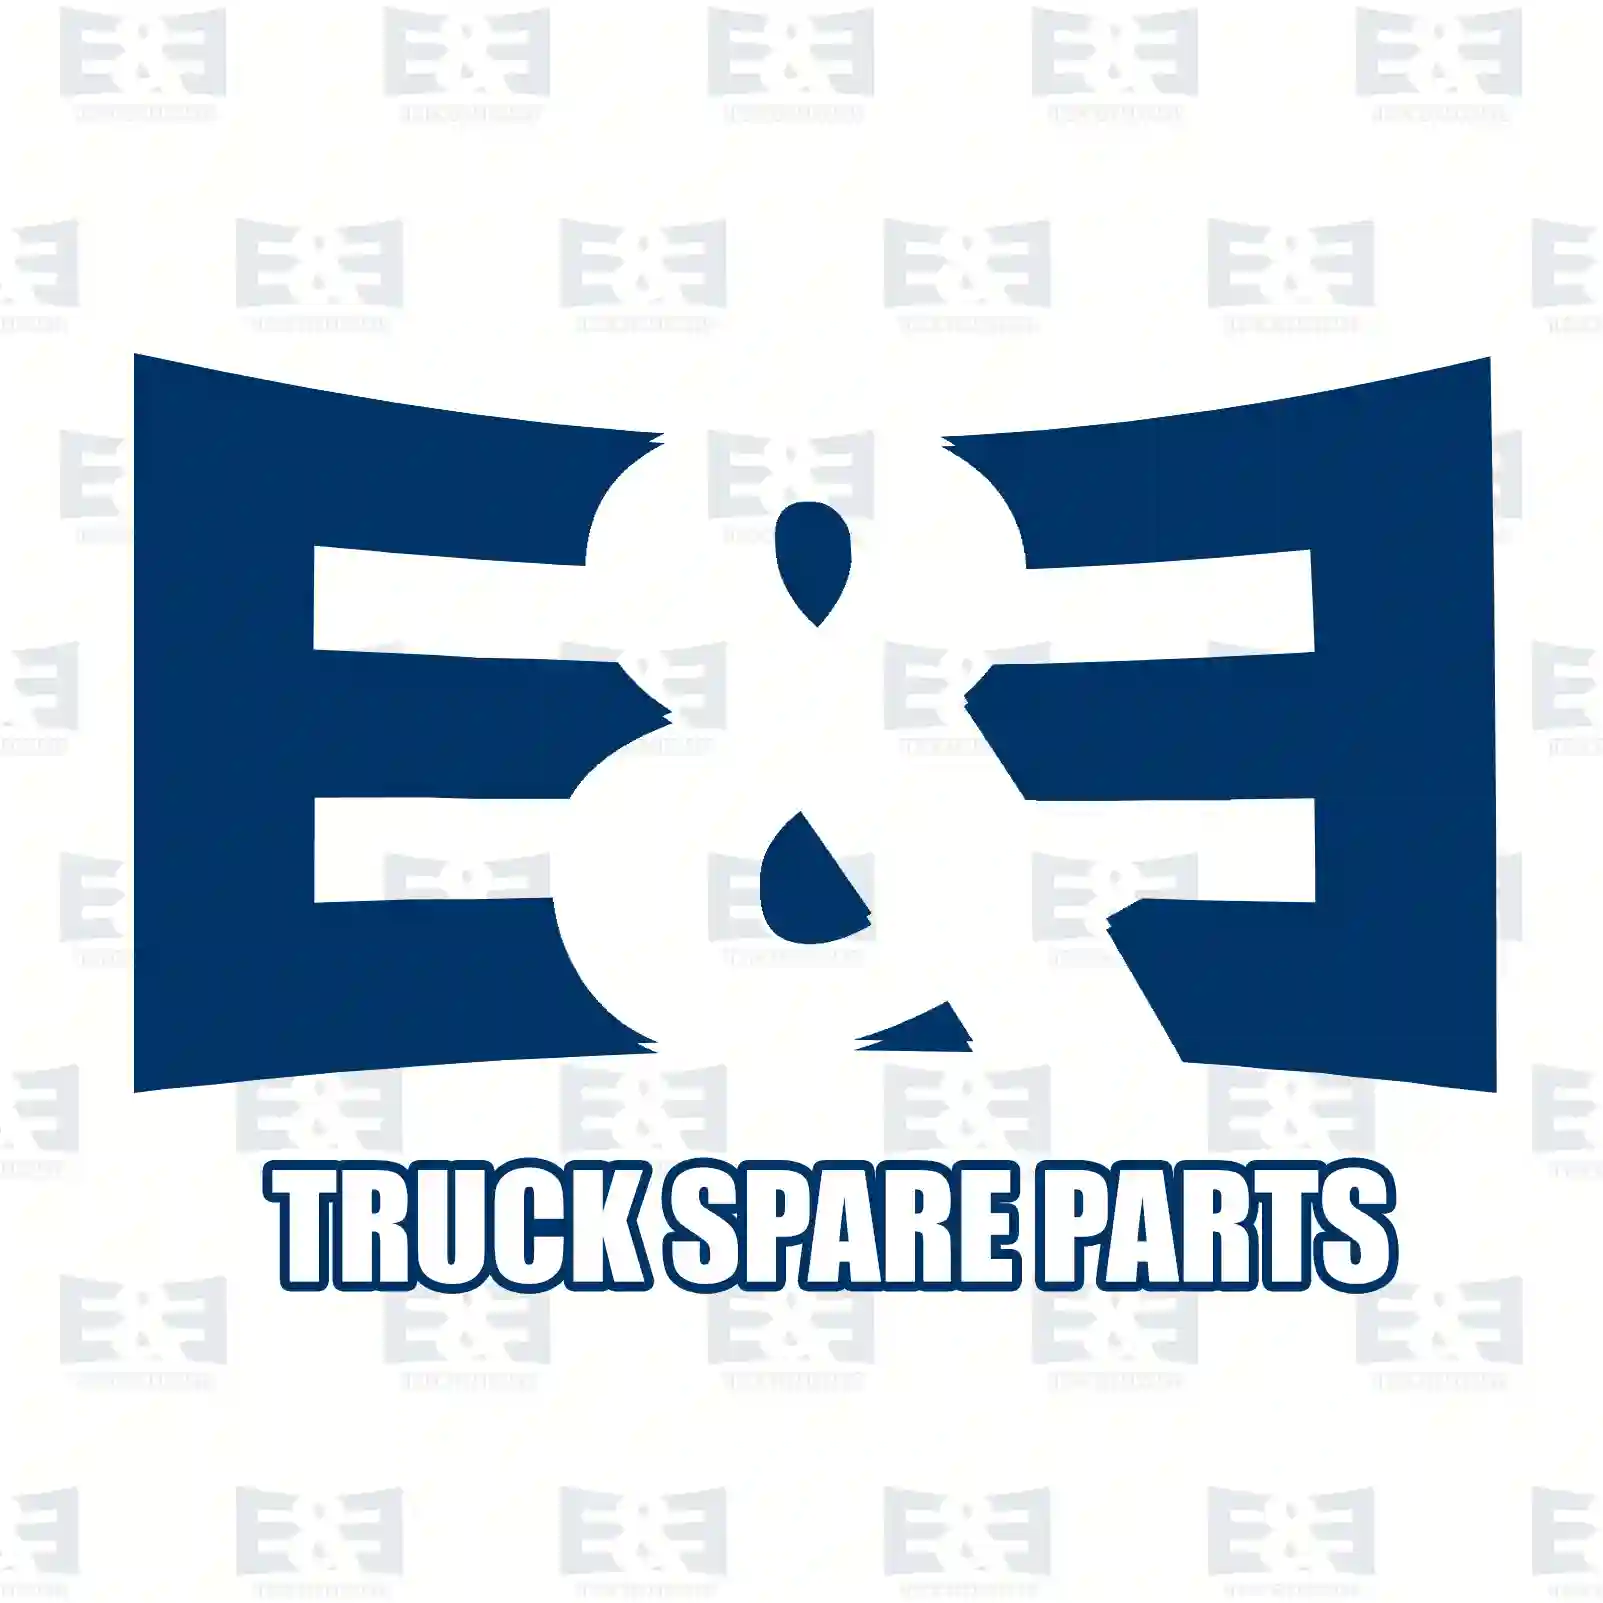 Piston with liner, 2E2208497, 5410102737, 5410301237, 5410302737 ||  2E2208497 E&E Truck Spare Parts | Truck Spare Parts, Auotomotive Spare Parts Piston with liner, 2E2208497, 5410102737, 5410301237, 5410302737 ||  2E2208497 E&E Truck Spare Parts | Truck Spare Parts, Auotomotive Spare Parts